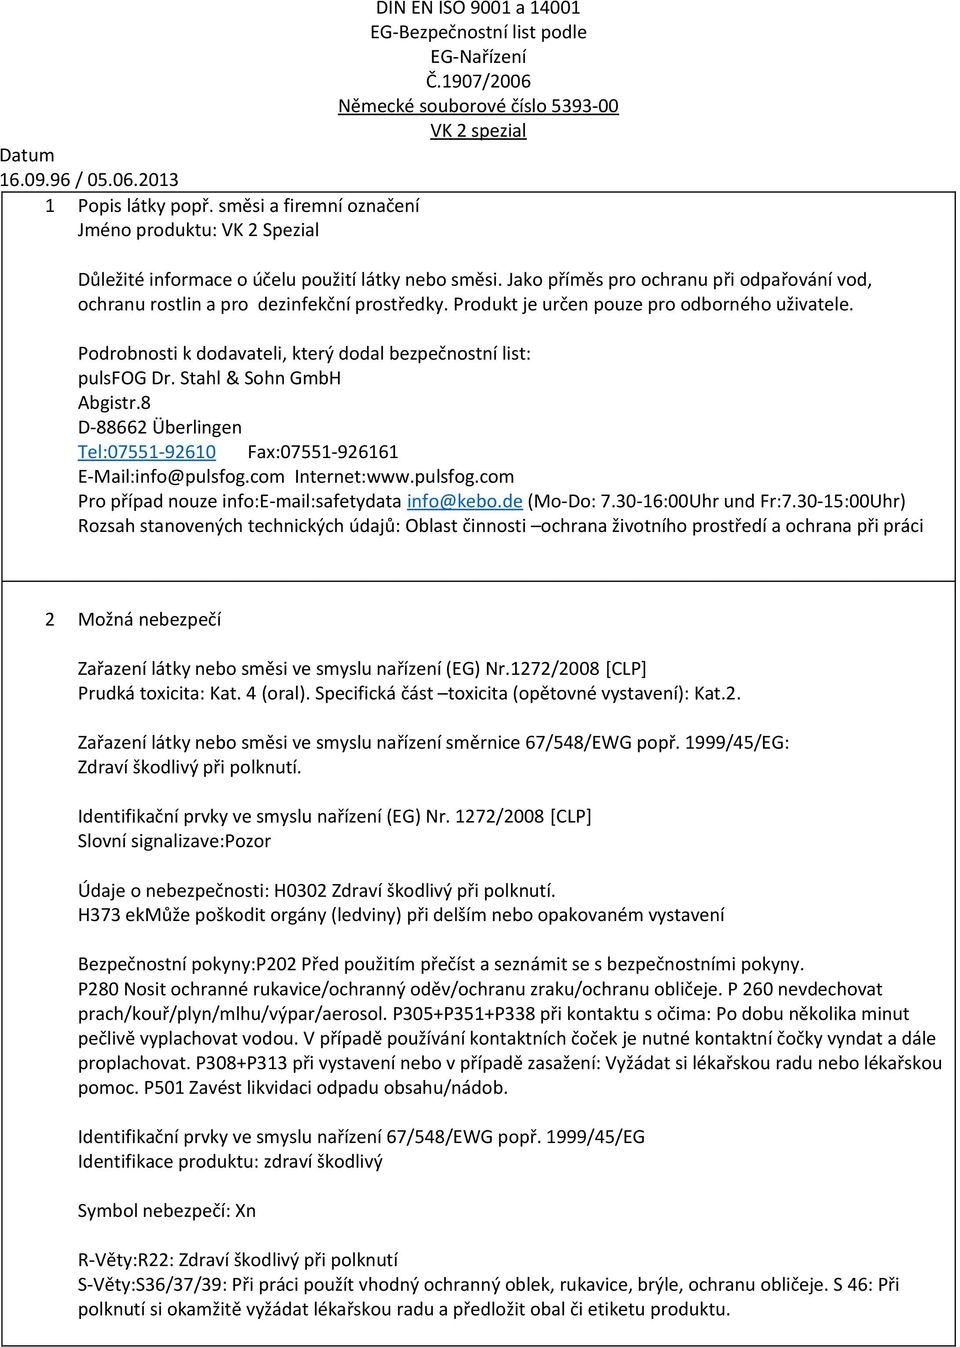 Podrobnosti k dodavateli, který dodal bezpečnostní list: pulsfog Dr. Stahl & Sohn GmbH Abgistr.8 D-88662 Überlingen Tel:07551-92610 Fax:07551-926161 E-Mail:info@pulsfog.com Internet:www.pulsfog.com Pro případ nouze info:e-mail:safetydata info@kebo.